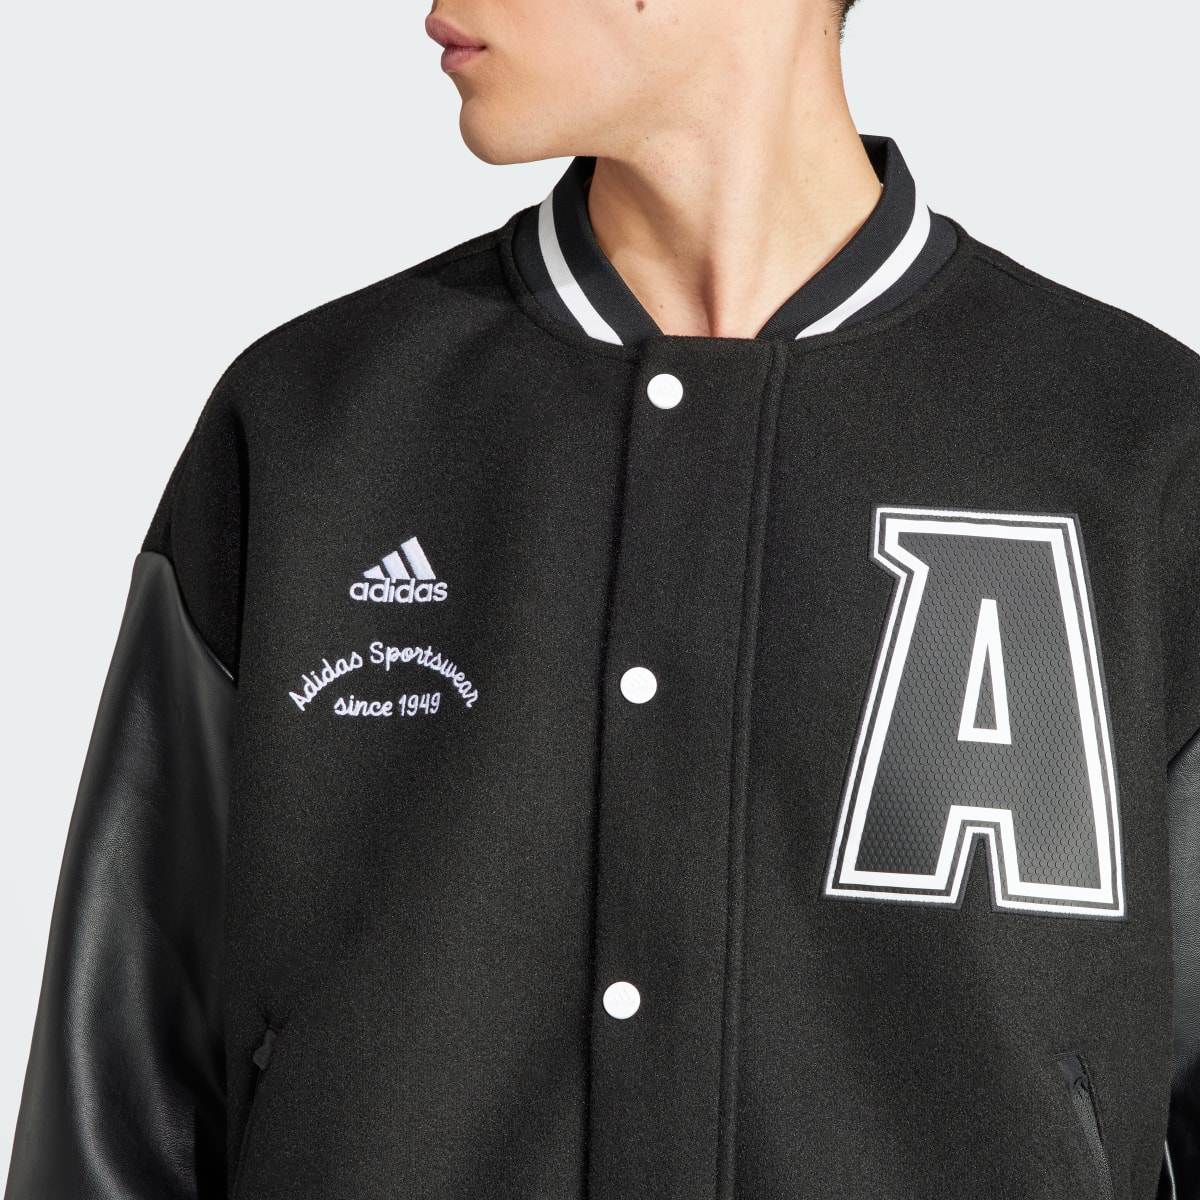 Adidas Collegiate Premium Jacket. 5